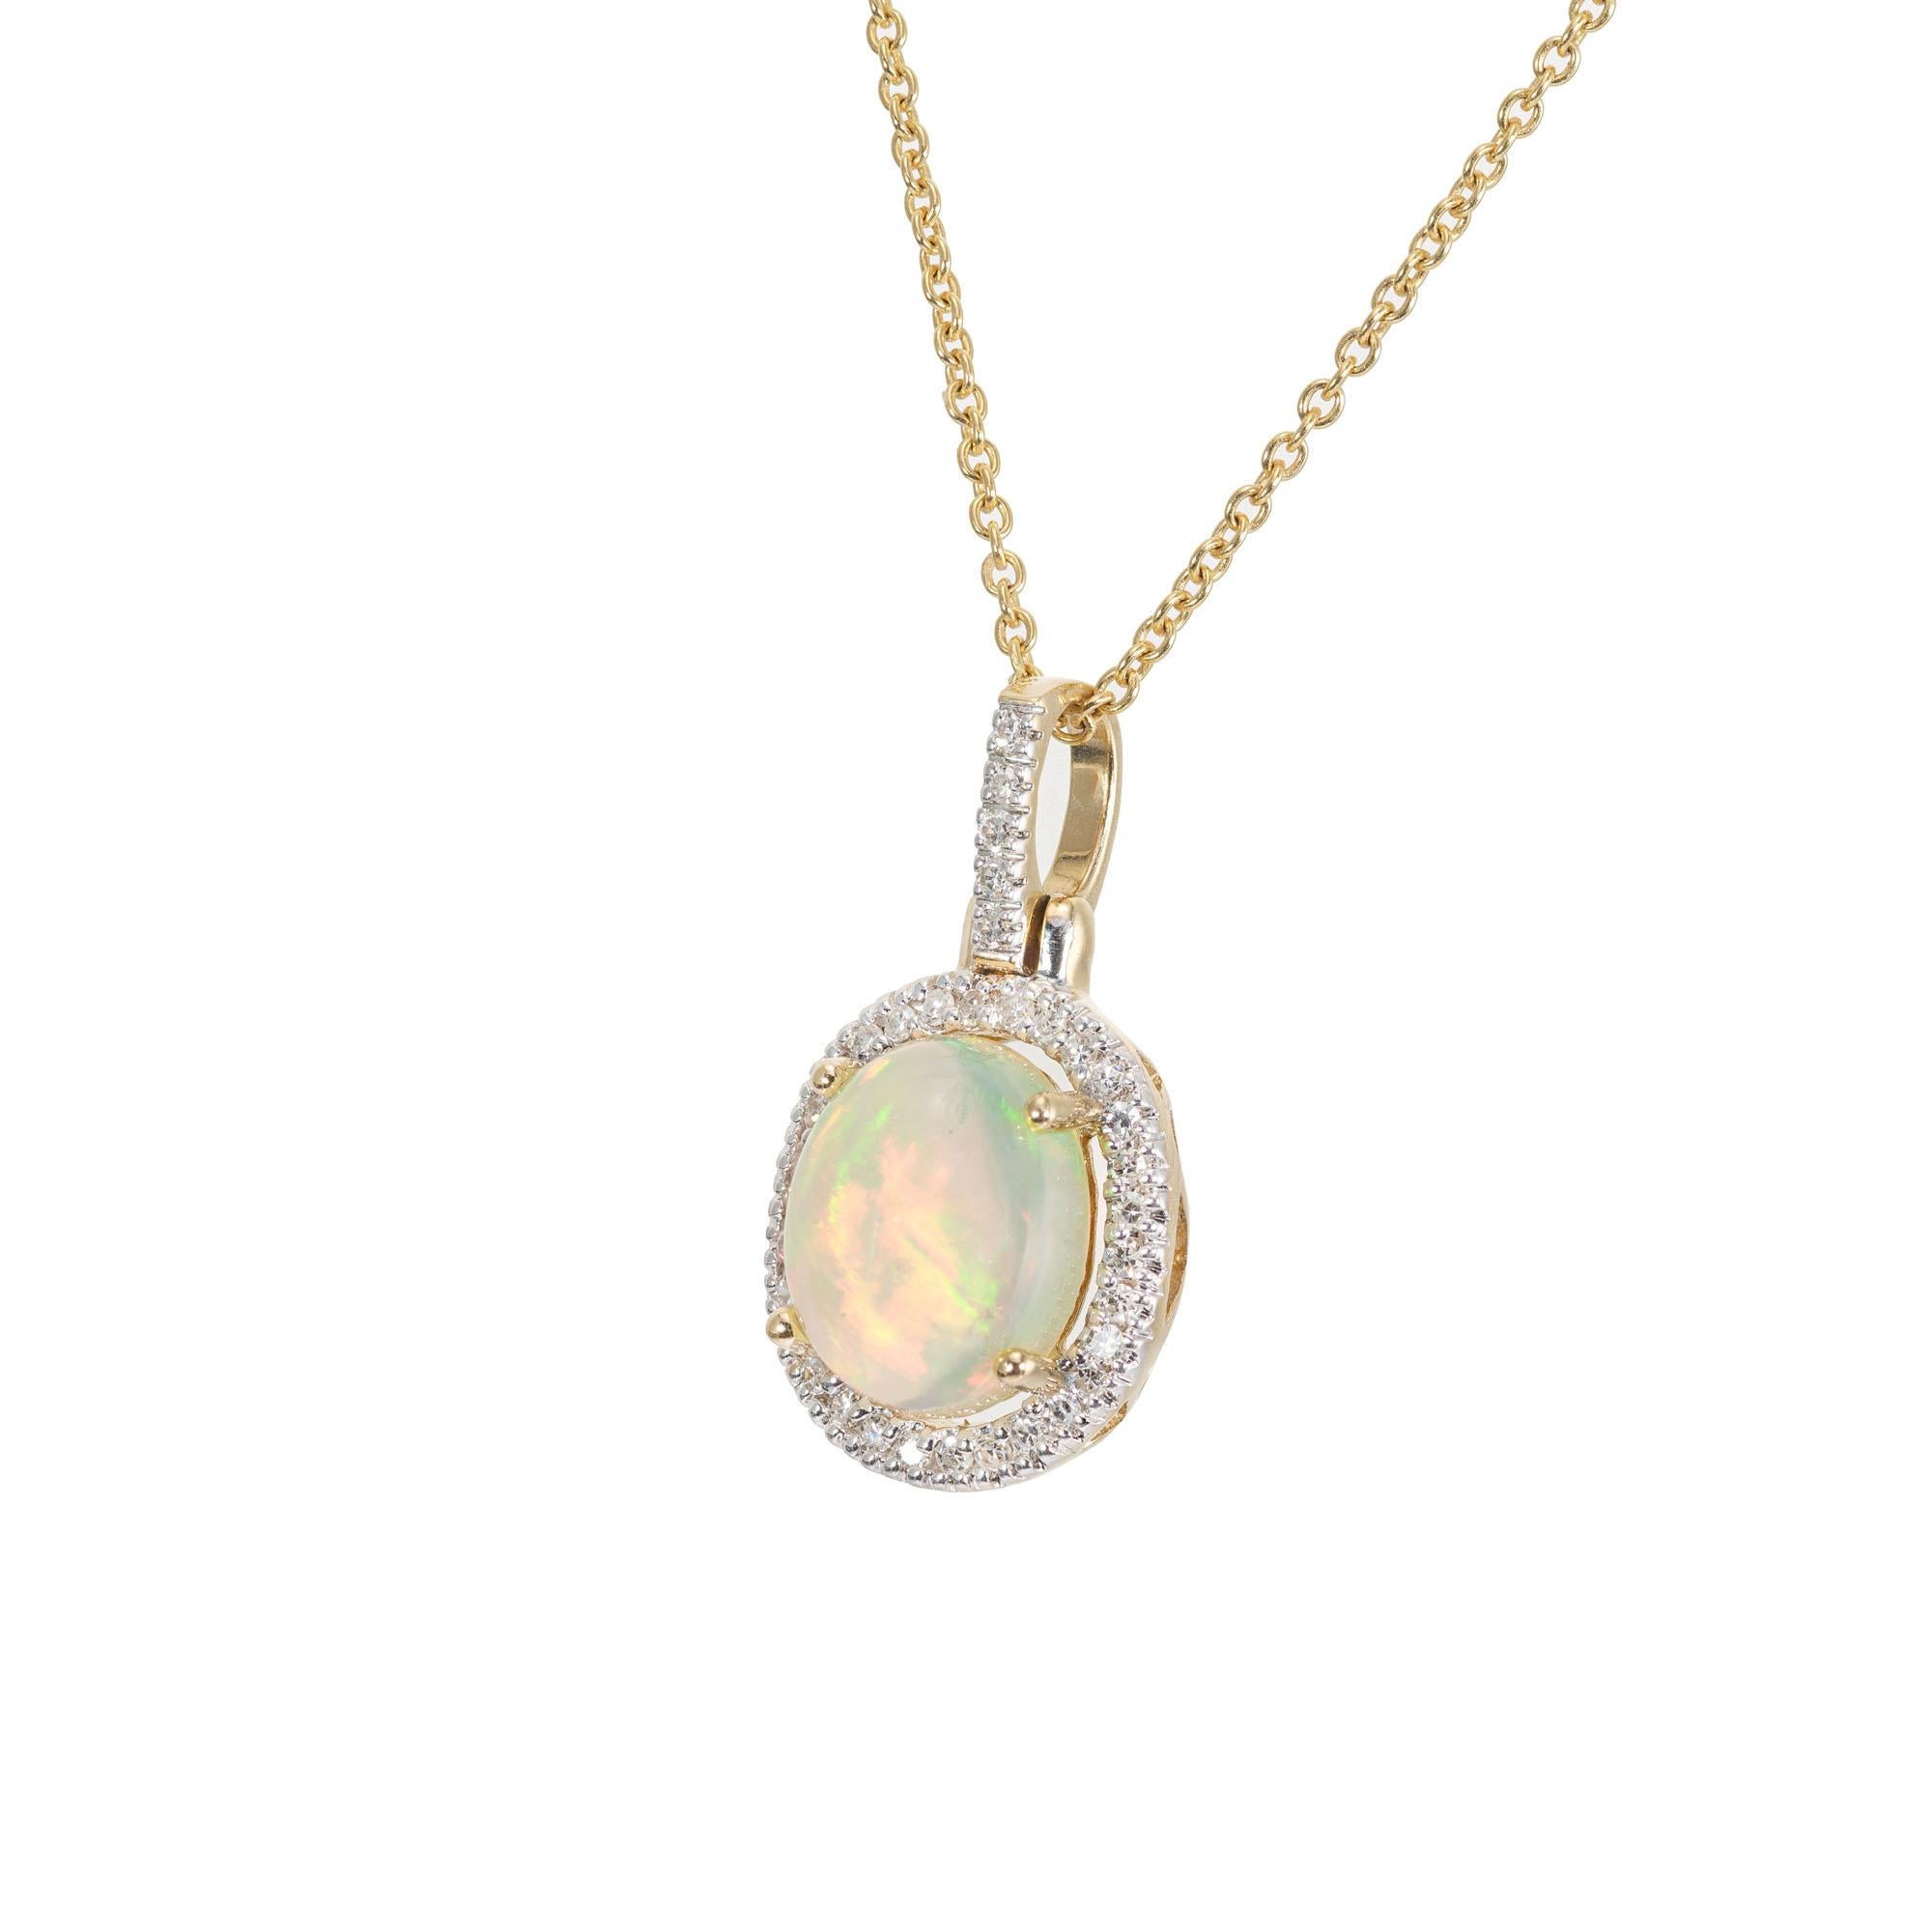 Collier pendentif en opale et diamant. Opale ovale de 2,25 avec un halo de 35 diamants taille unique, dans une monture en or jaune 14k et une chaîne de 16 pouces. 

1 pendentif ovale vert rougeâtre, environ 2,25cts
35 diamants taille unique, G-H SI